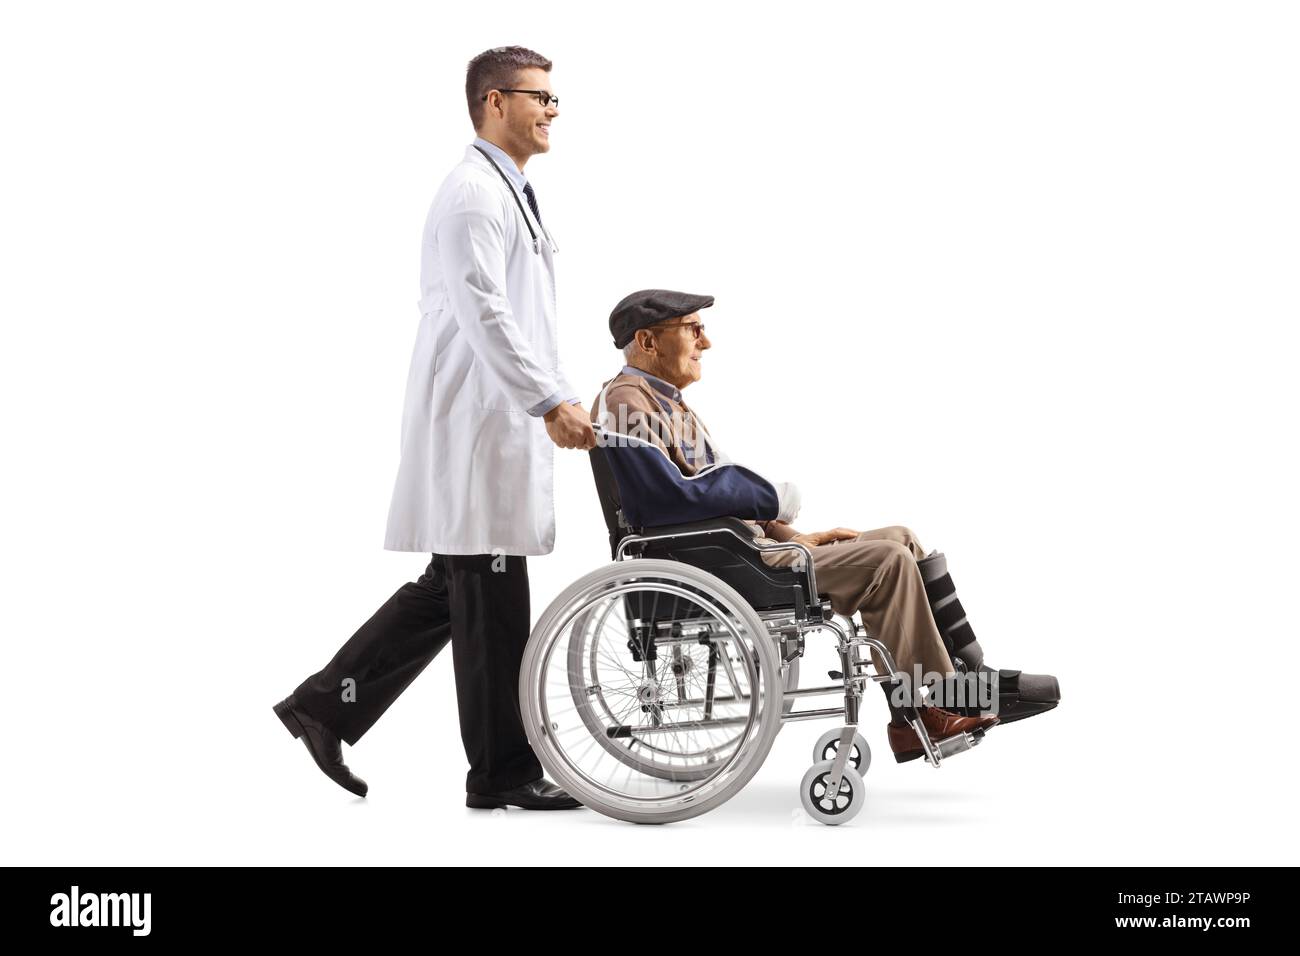 Docteur poussant un homme âgé blessé dans un fauteuil roulant isolé sur fond blanc Banque D'Images